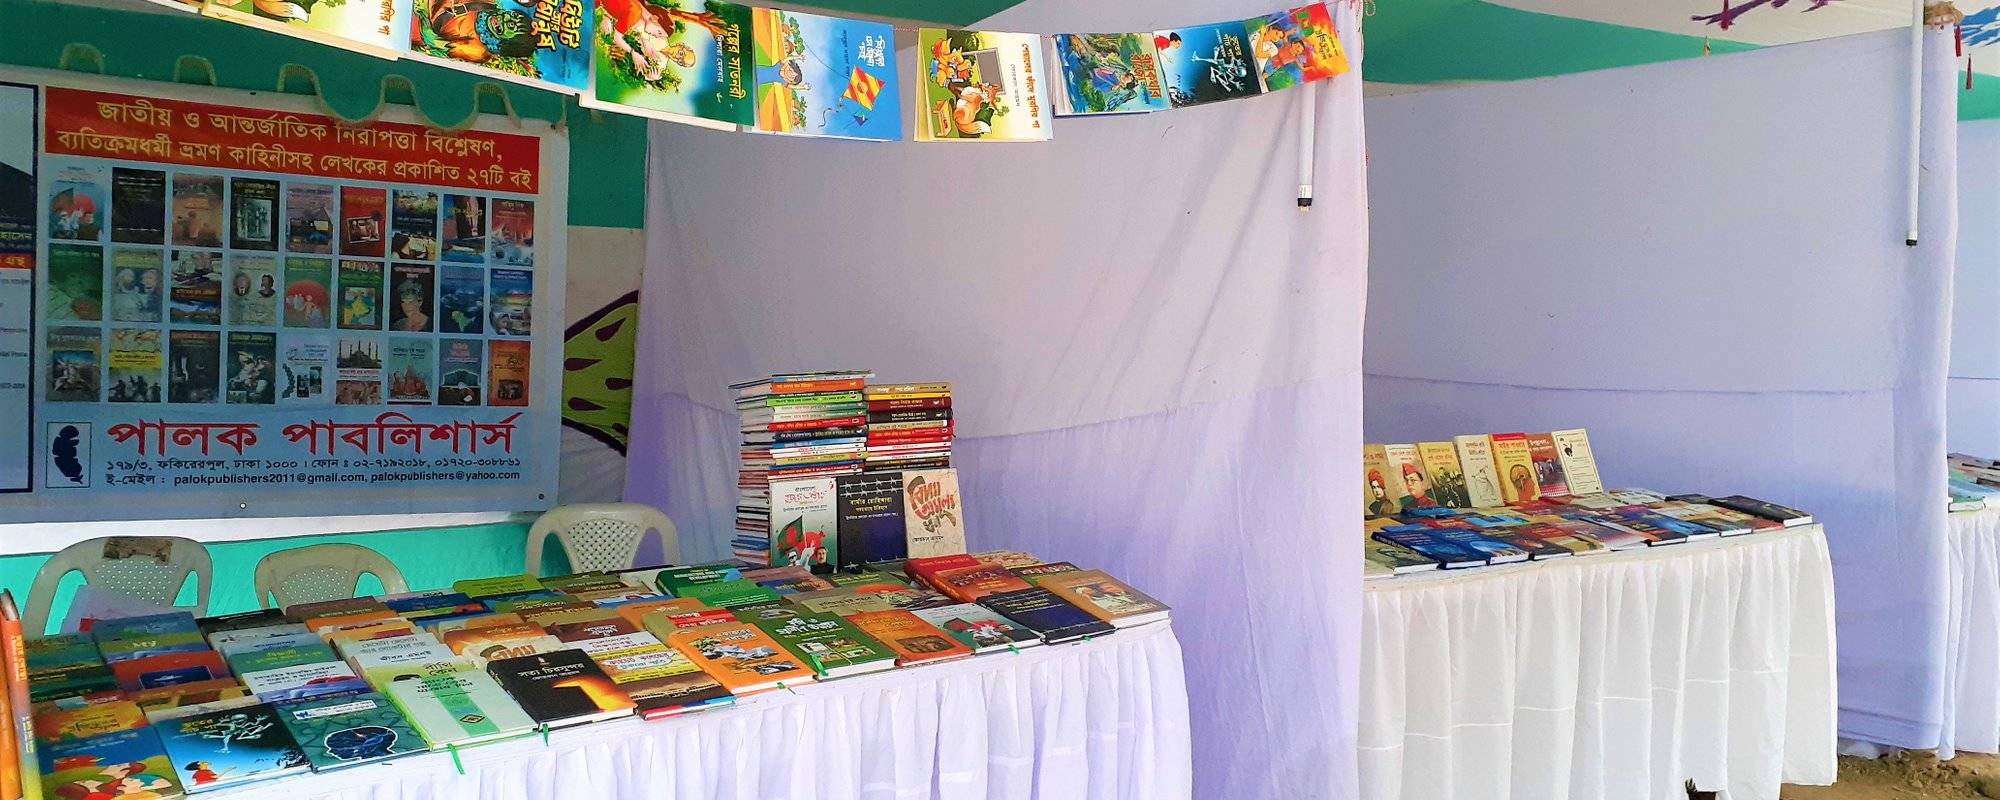 Book Fair in University of Dhaka! || Weekend Travel.